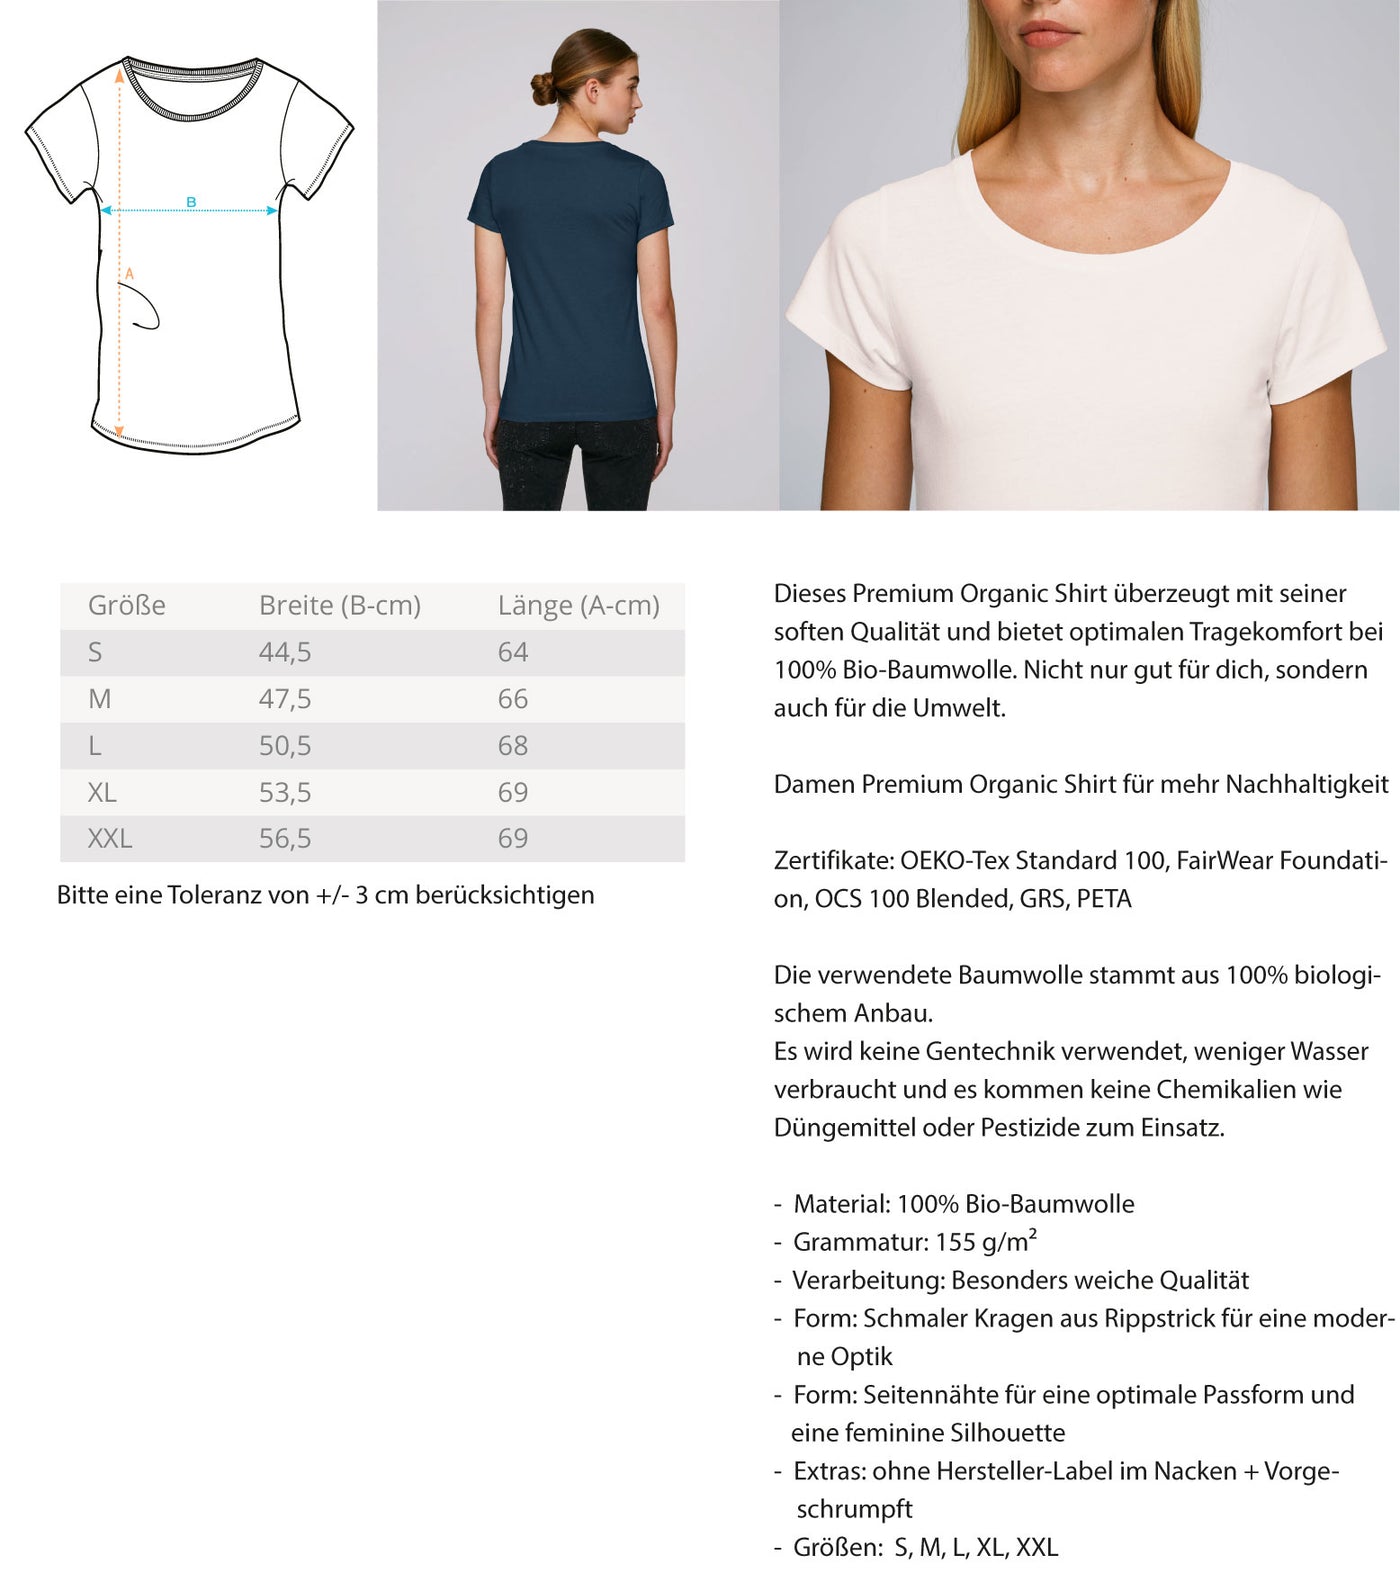 Tiefschnee Skier - Damen Premium Organic T-Shirt